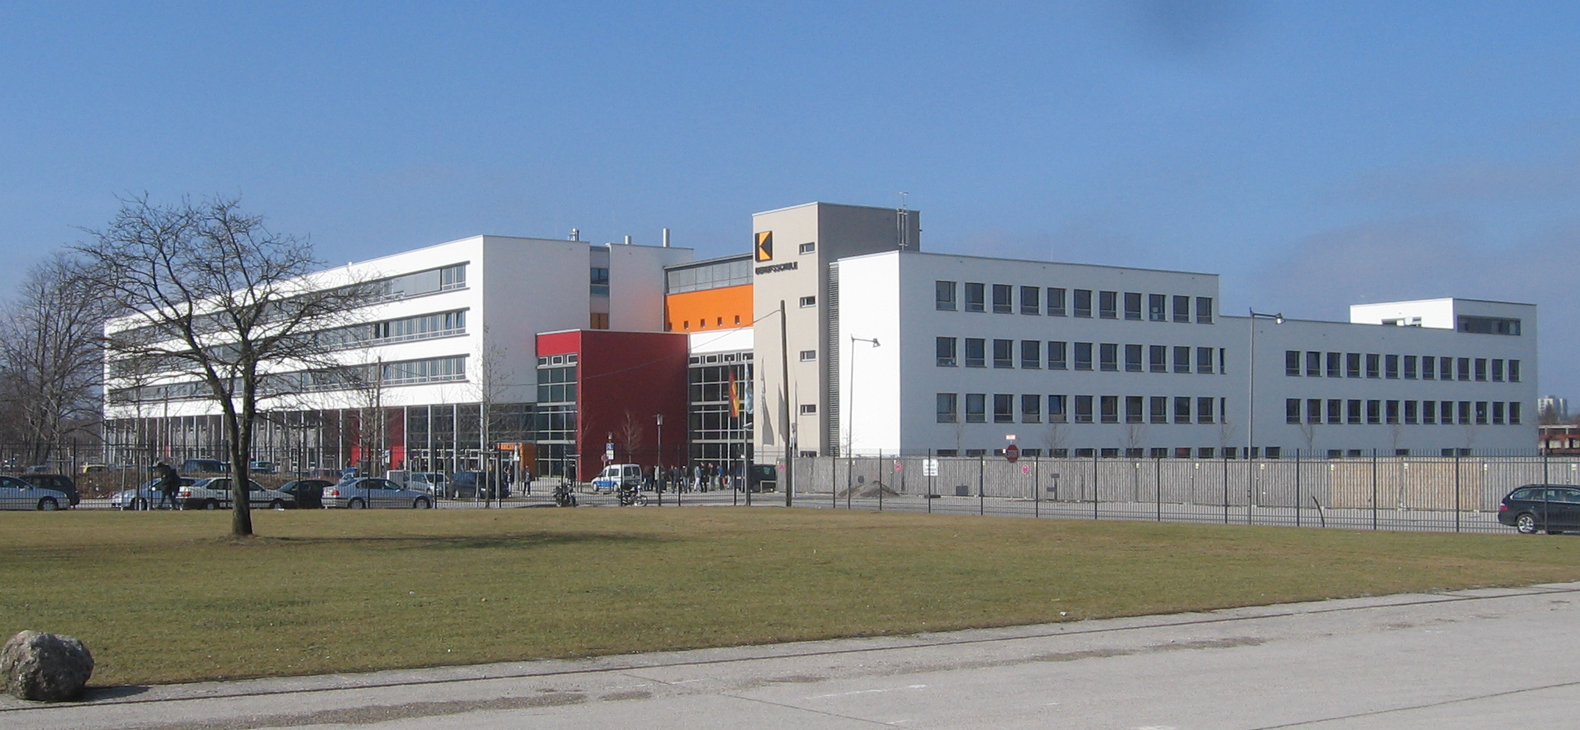 Außenansicht der Adolf-Kolping-Berufsschule in München:
Blick von einer Straße über einen Rasen auf einen Gebäude-Komplex aus Längs- und Querriegeln.